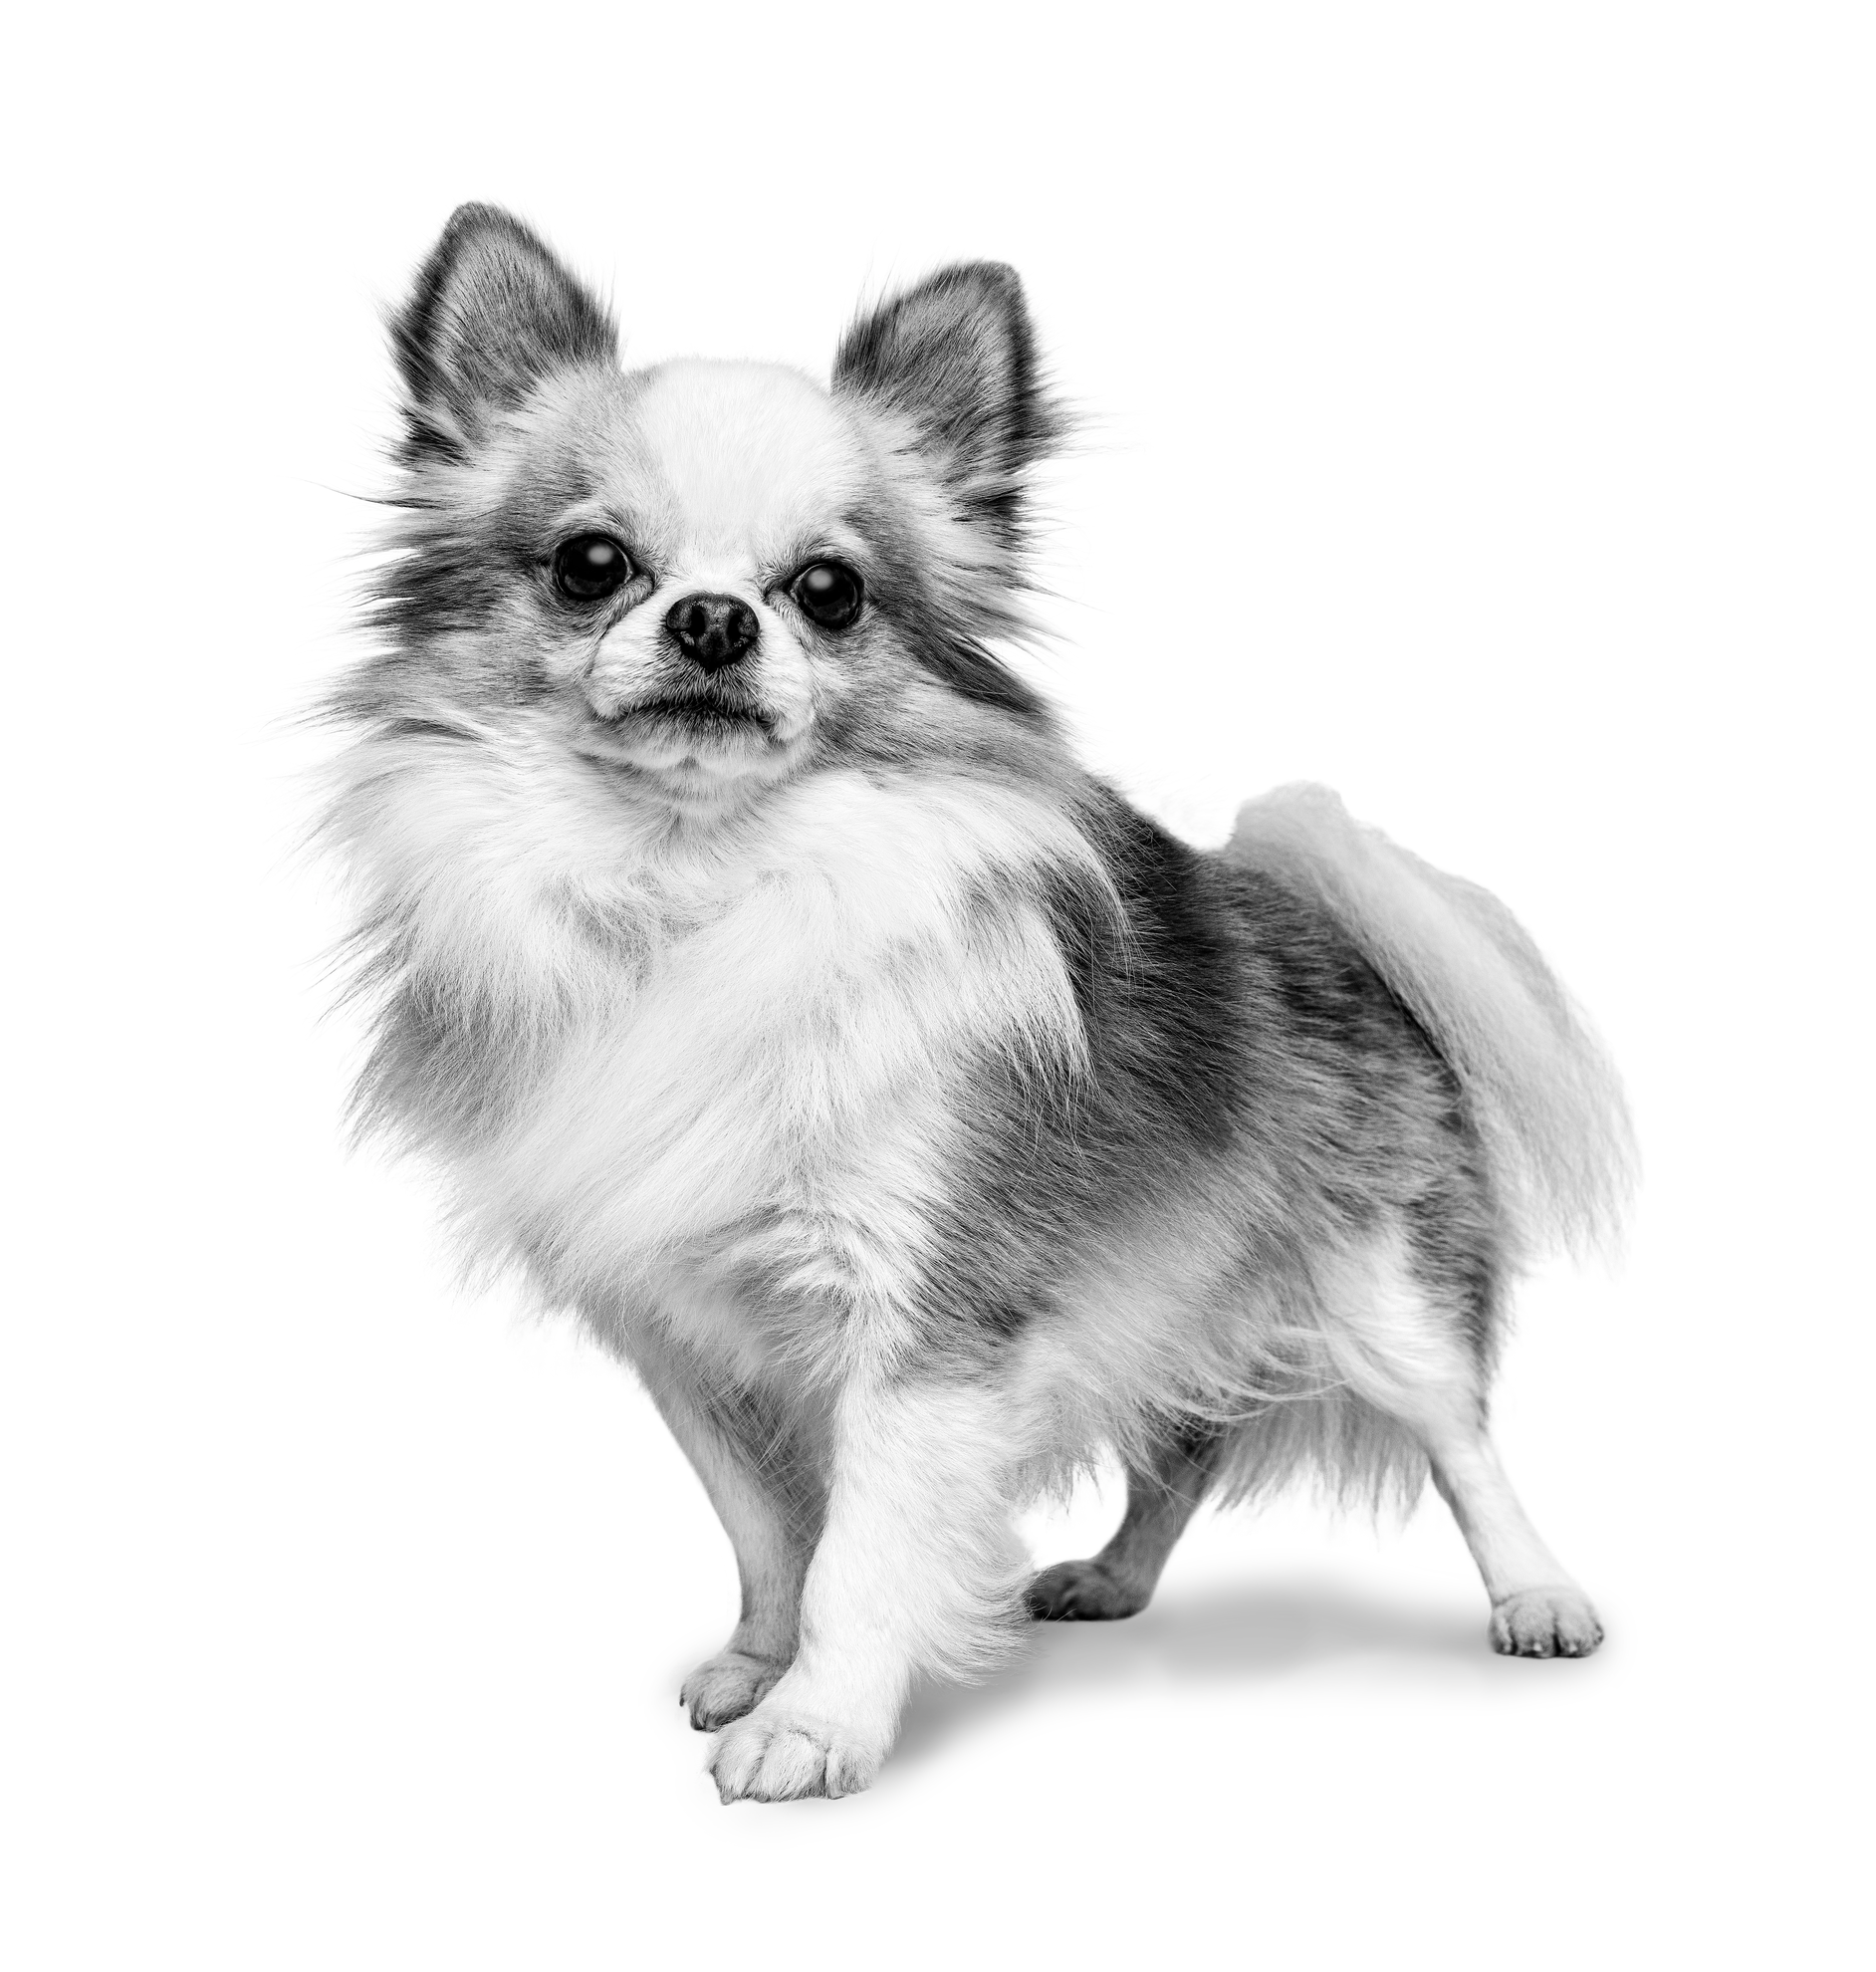 Chihuahua adulto in piedi in bianco e nero su sfondo bianco